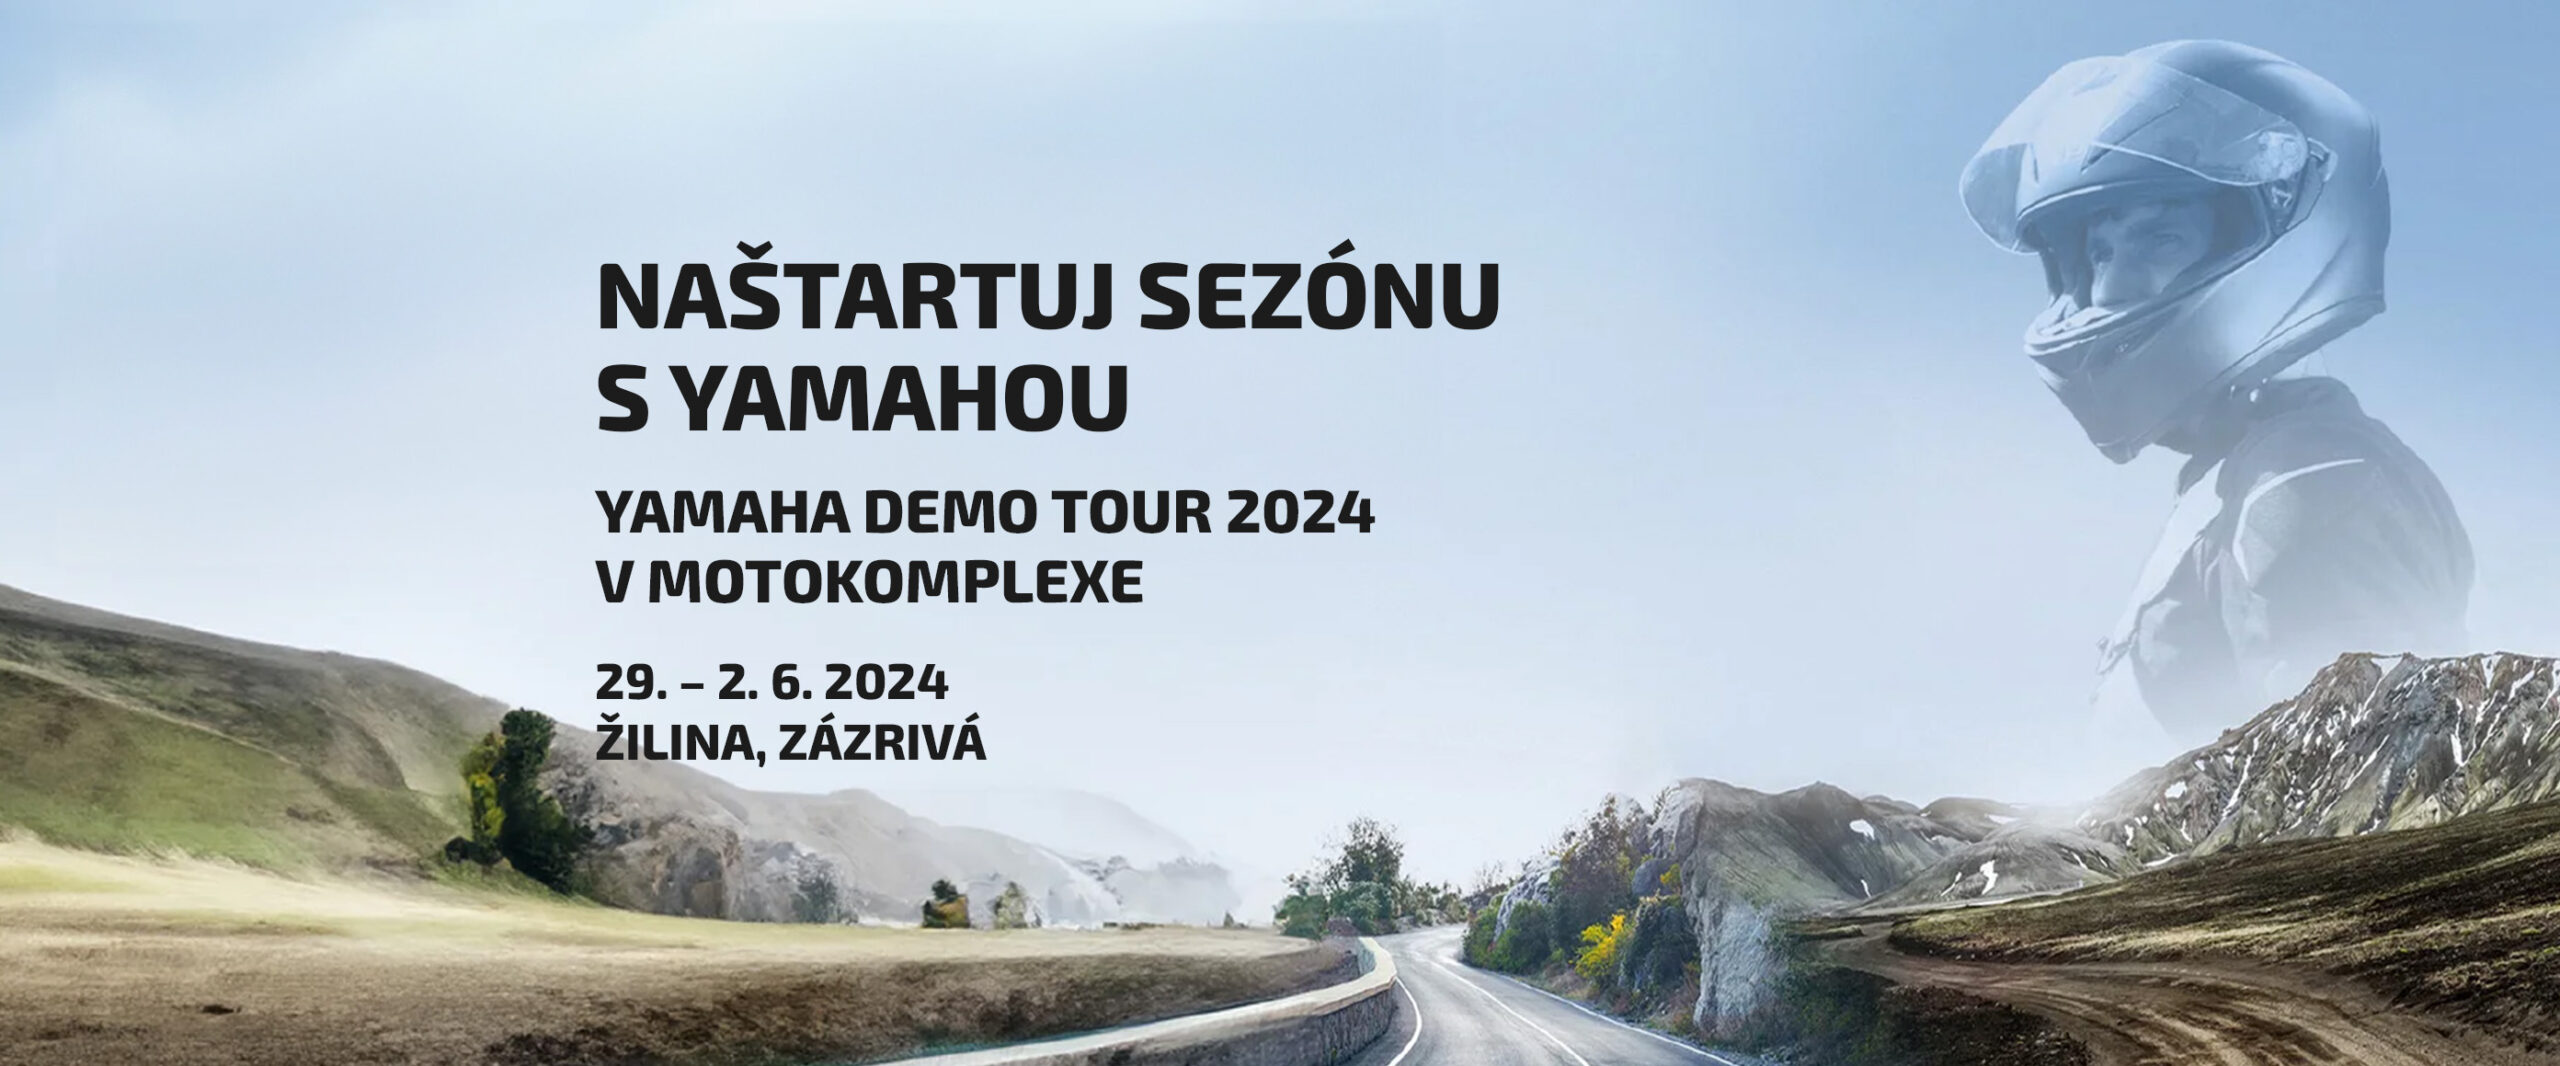 Yamaha demo tour 2024